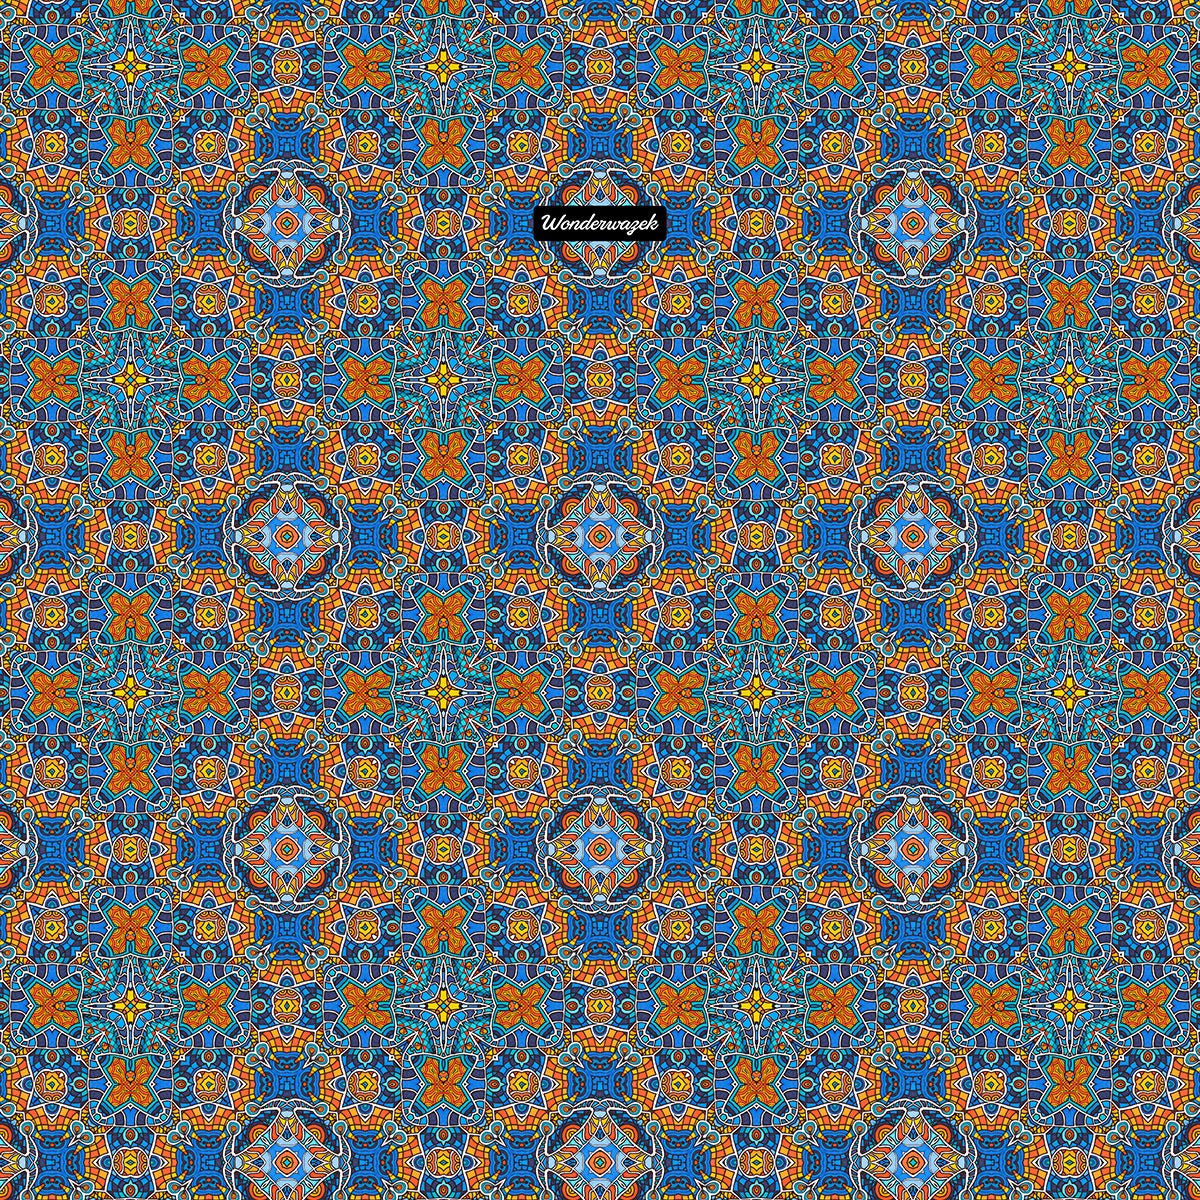 Badetuch • Blankas Blumen – Kaleidoskop 1, blau, orange - Wonderwazek